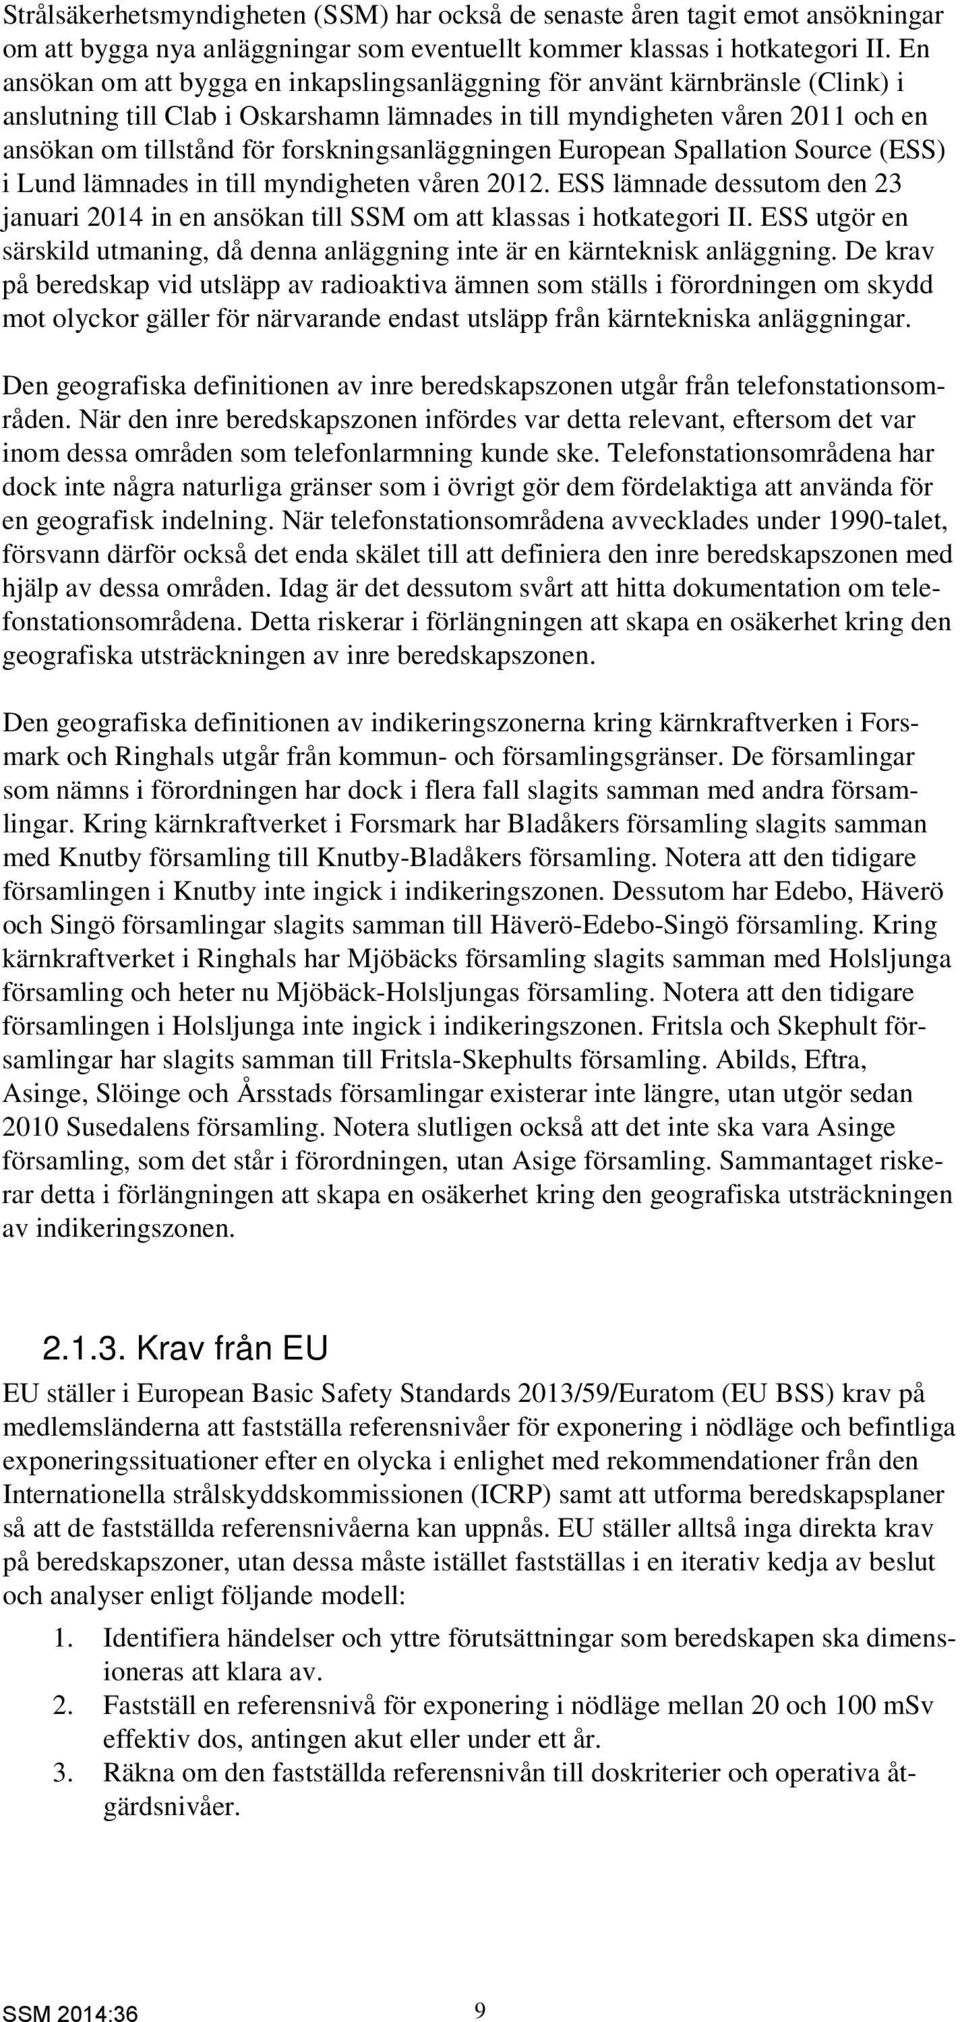 forskningsanläggningen European Spallation Source (ESS) i Lund lämnades in till myndigheten våren 2012. ESS lämnade dessutom den 23 januari 2014 in en ansökan till SSM om att klassas i hotkategori II.